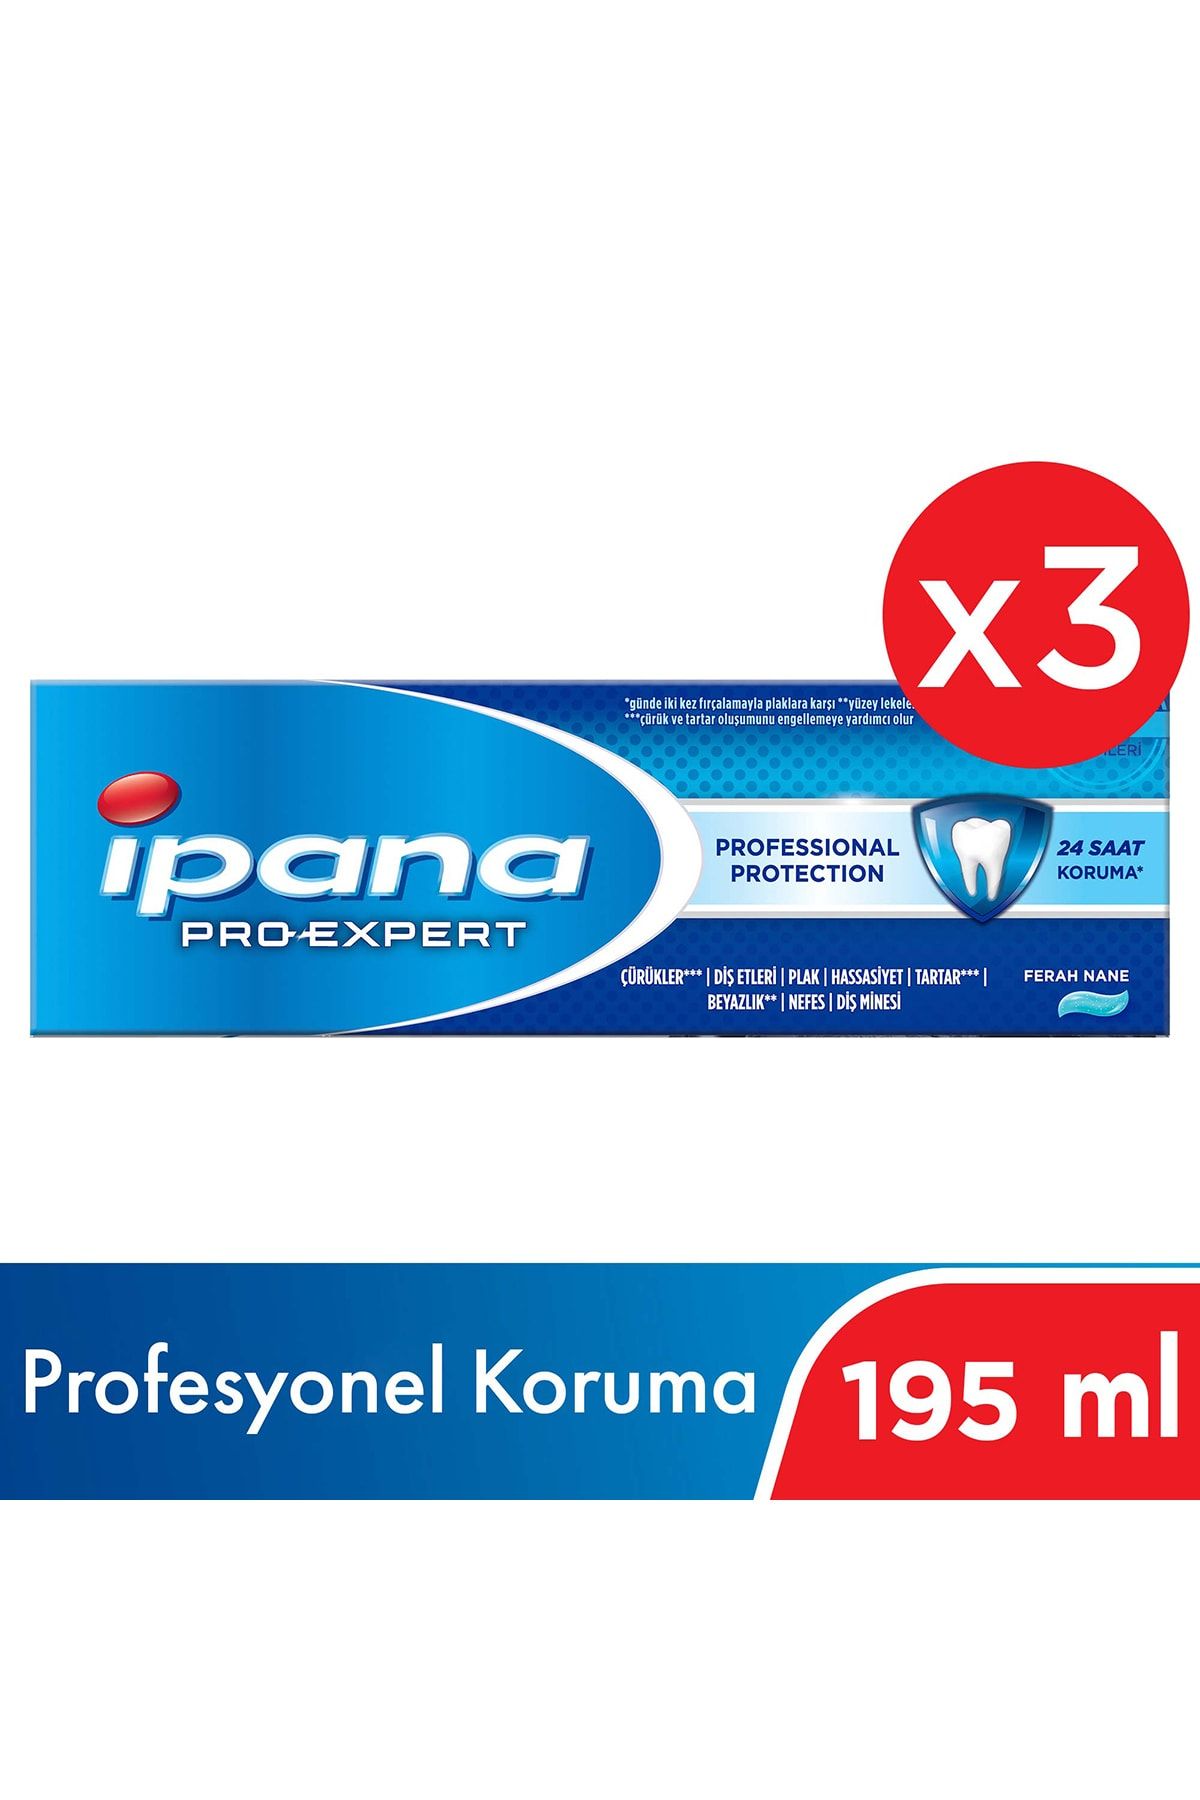 İpana Pro-expert Profesyonel Koruma Diş Macunu 195 ml ( 65ml X 3 )